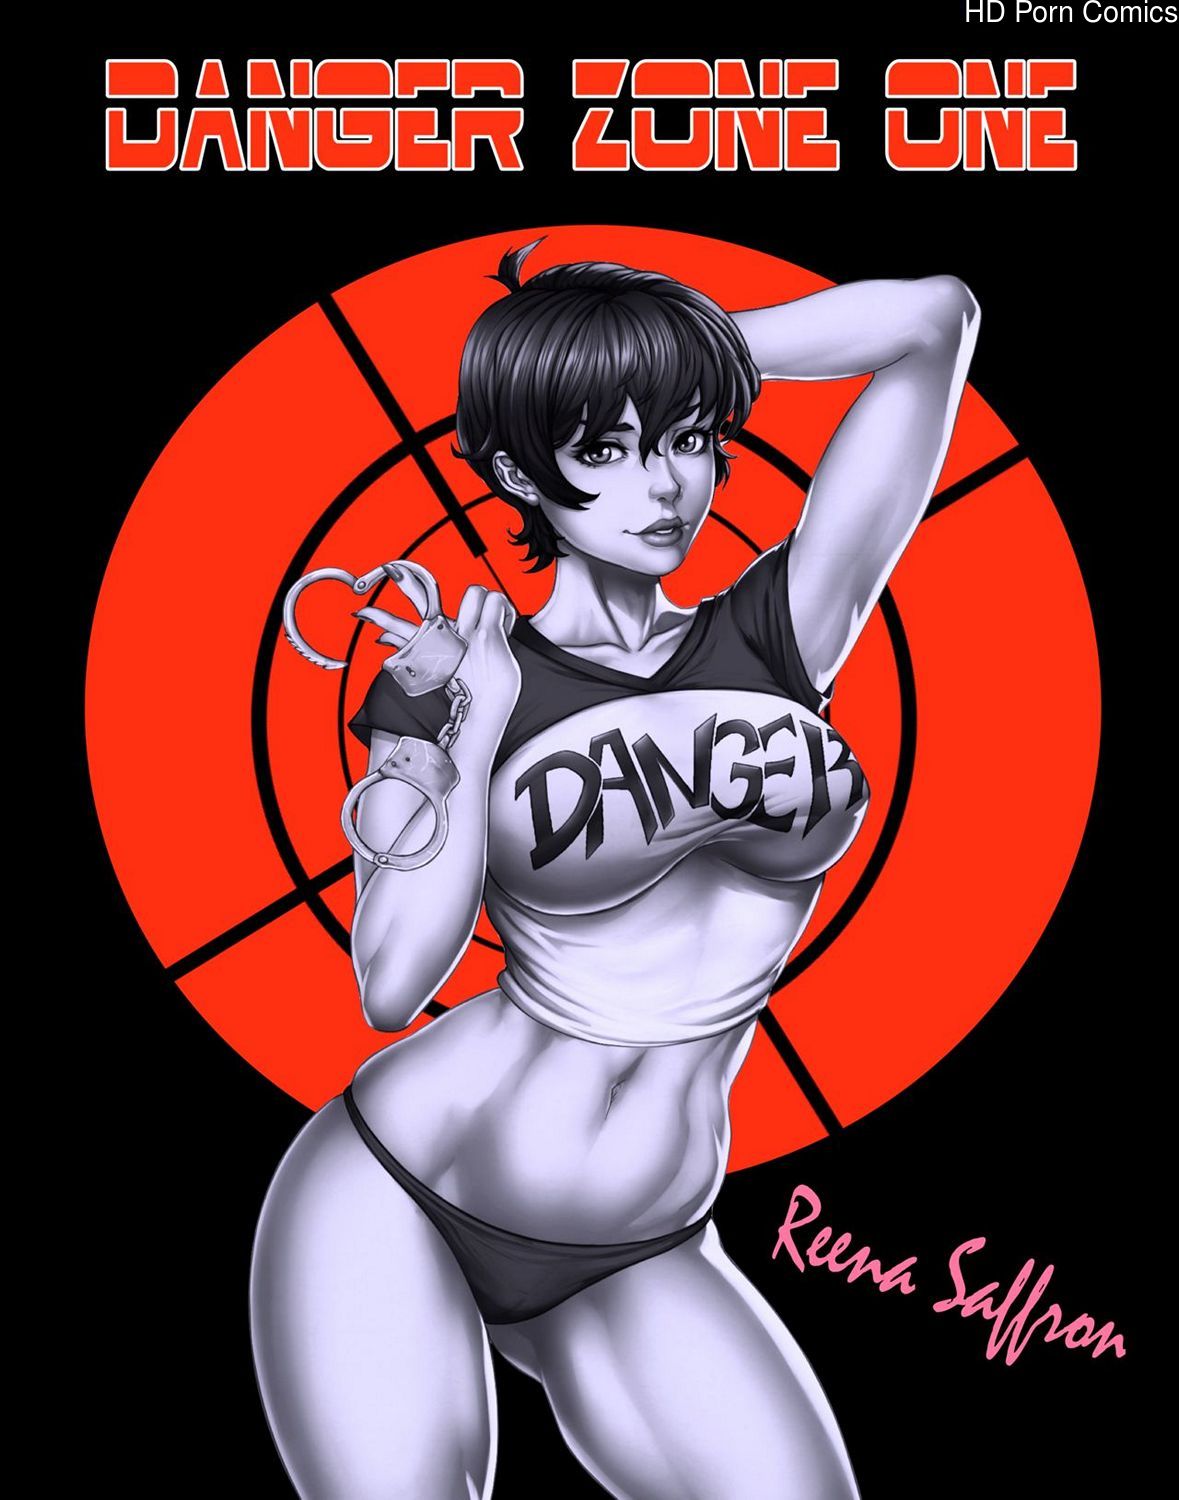 Porn Comics Alien Nightmare - Danger Zone One - Reena's Nightmare comic porn | HD Porn Comics